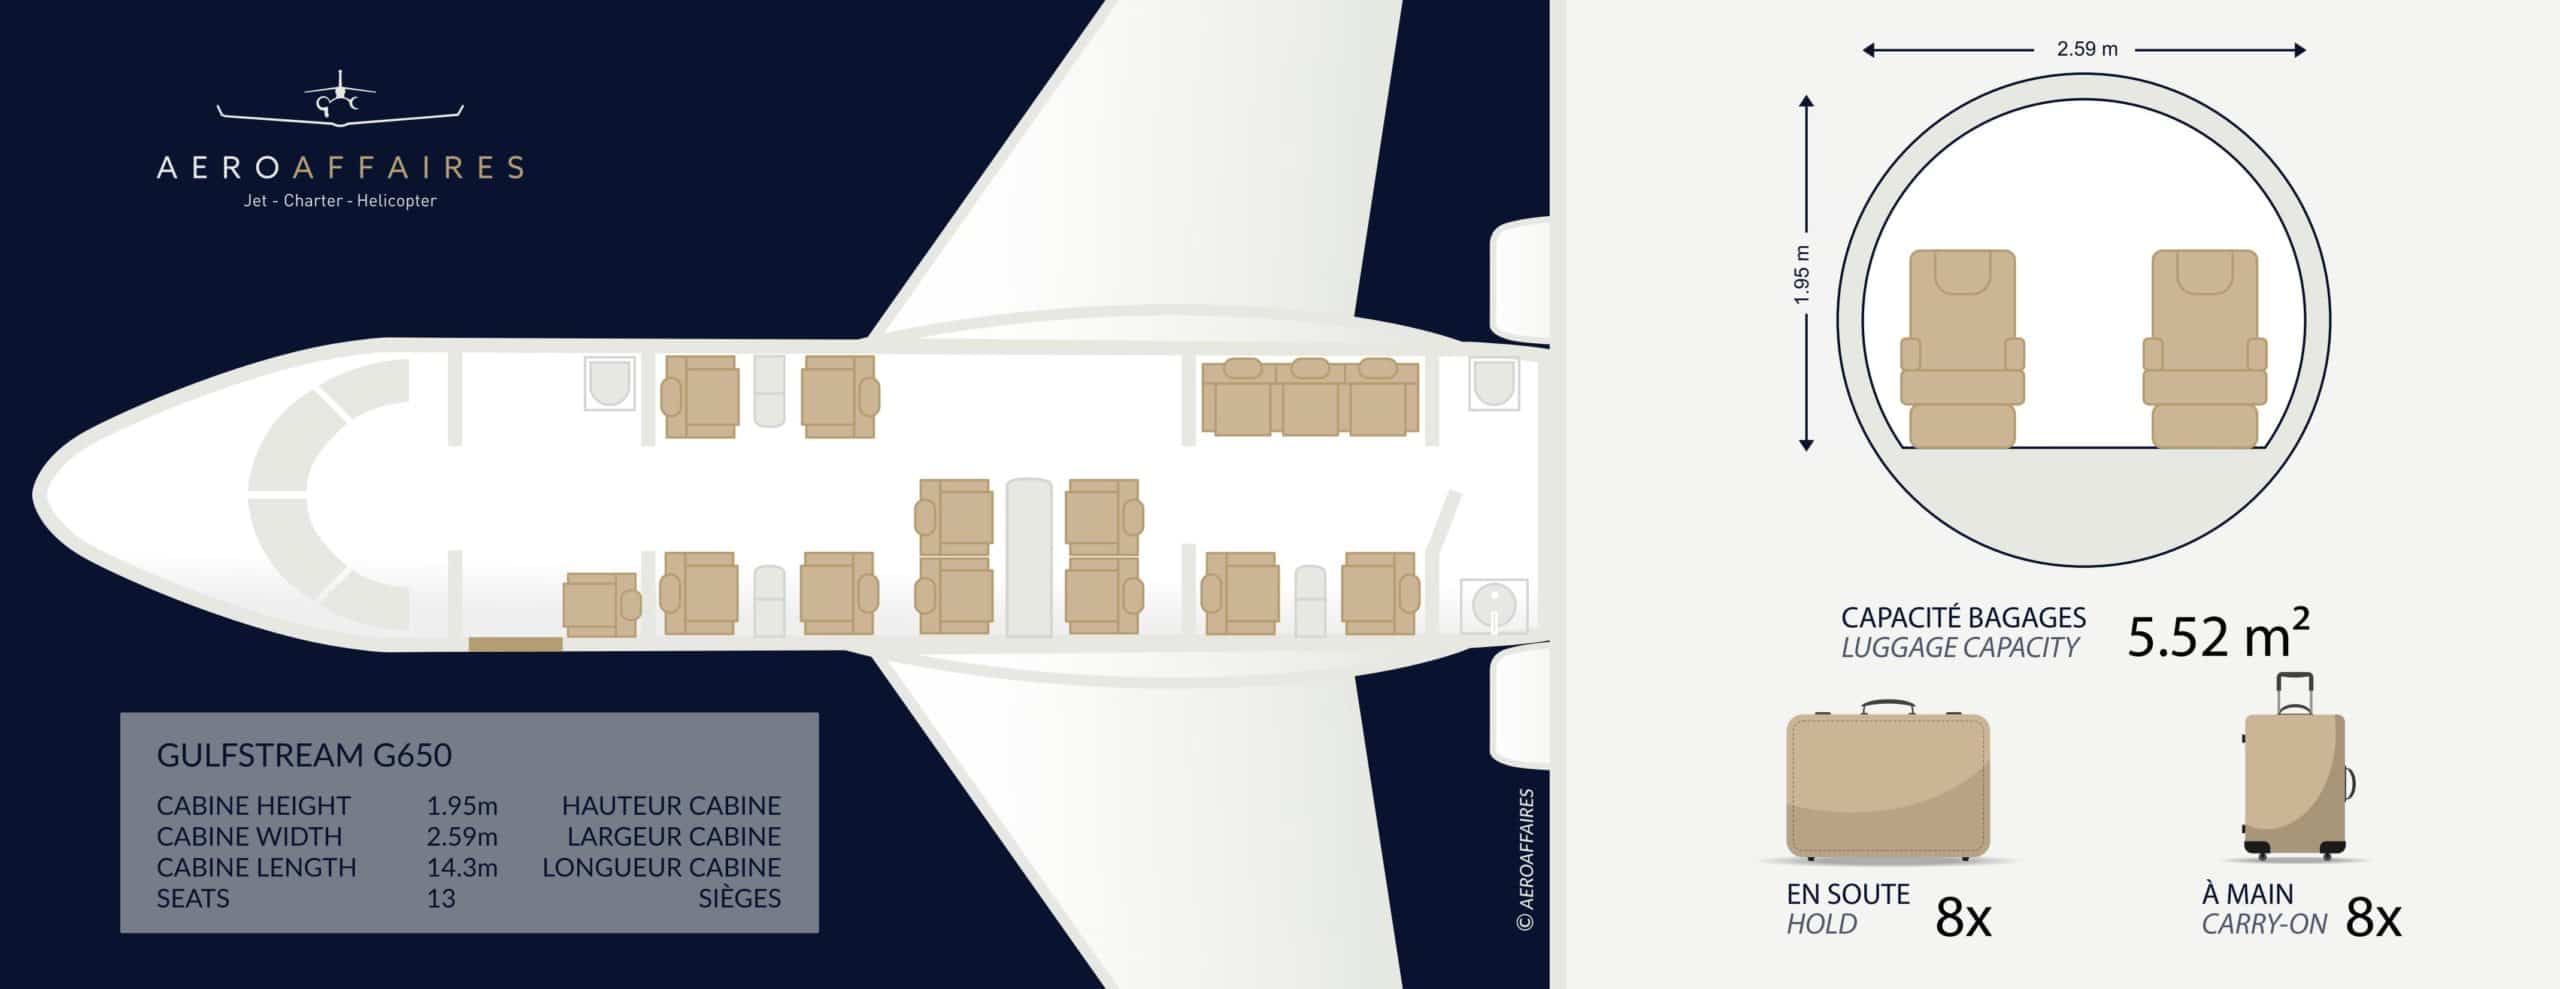 Gulfstream G600 cabina interior de jet privado